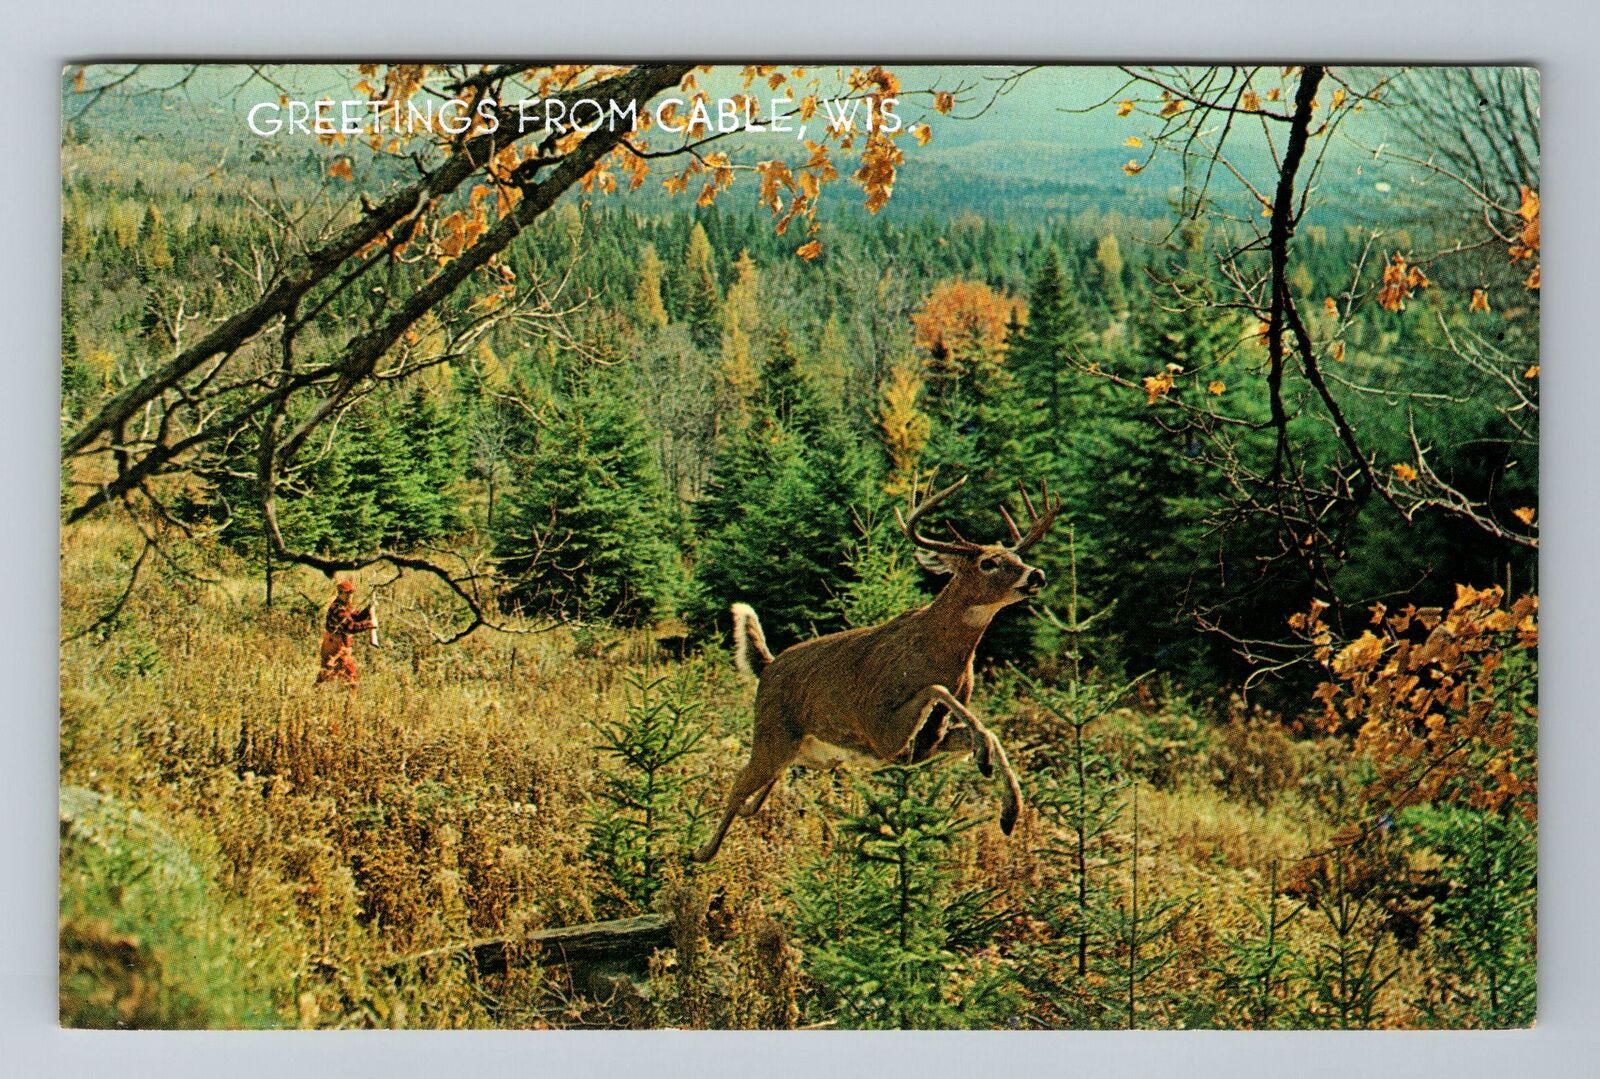 Cable WI-Wisconsin, Deer Running, Greetings, Vintage Postcard